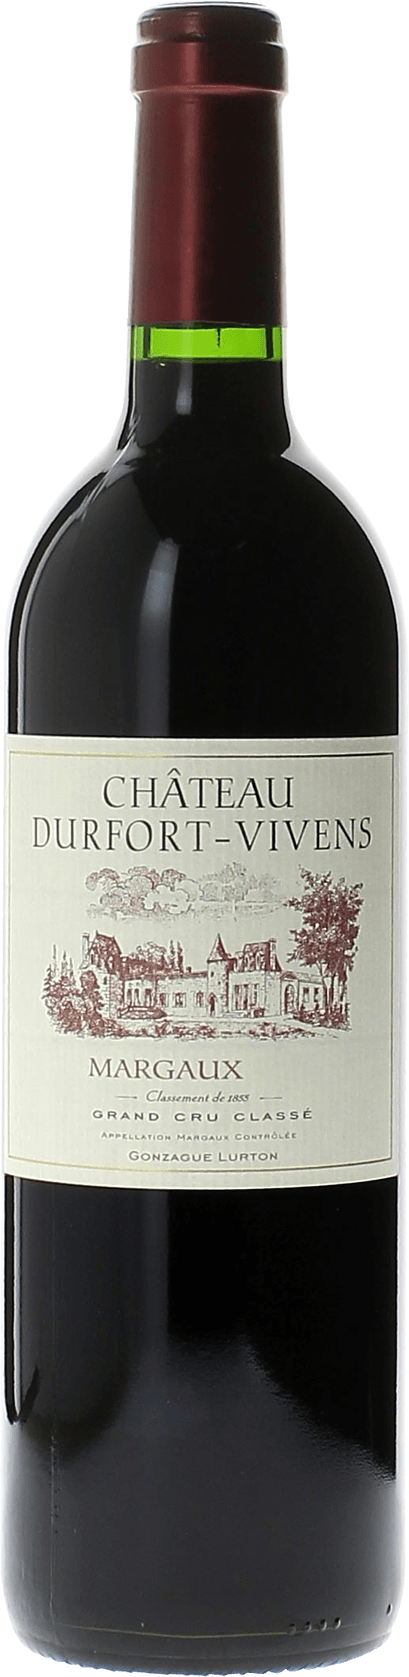 Durfort vivens 1979  Margaux, Bordeaux rouge